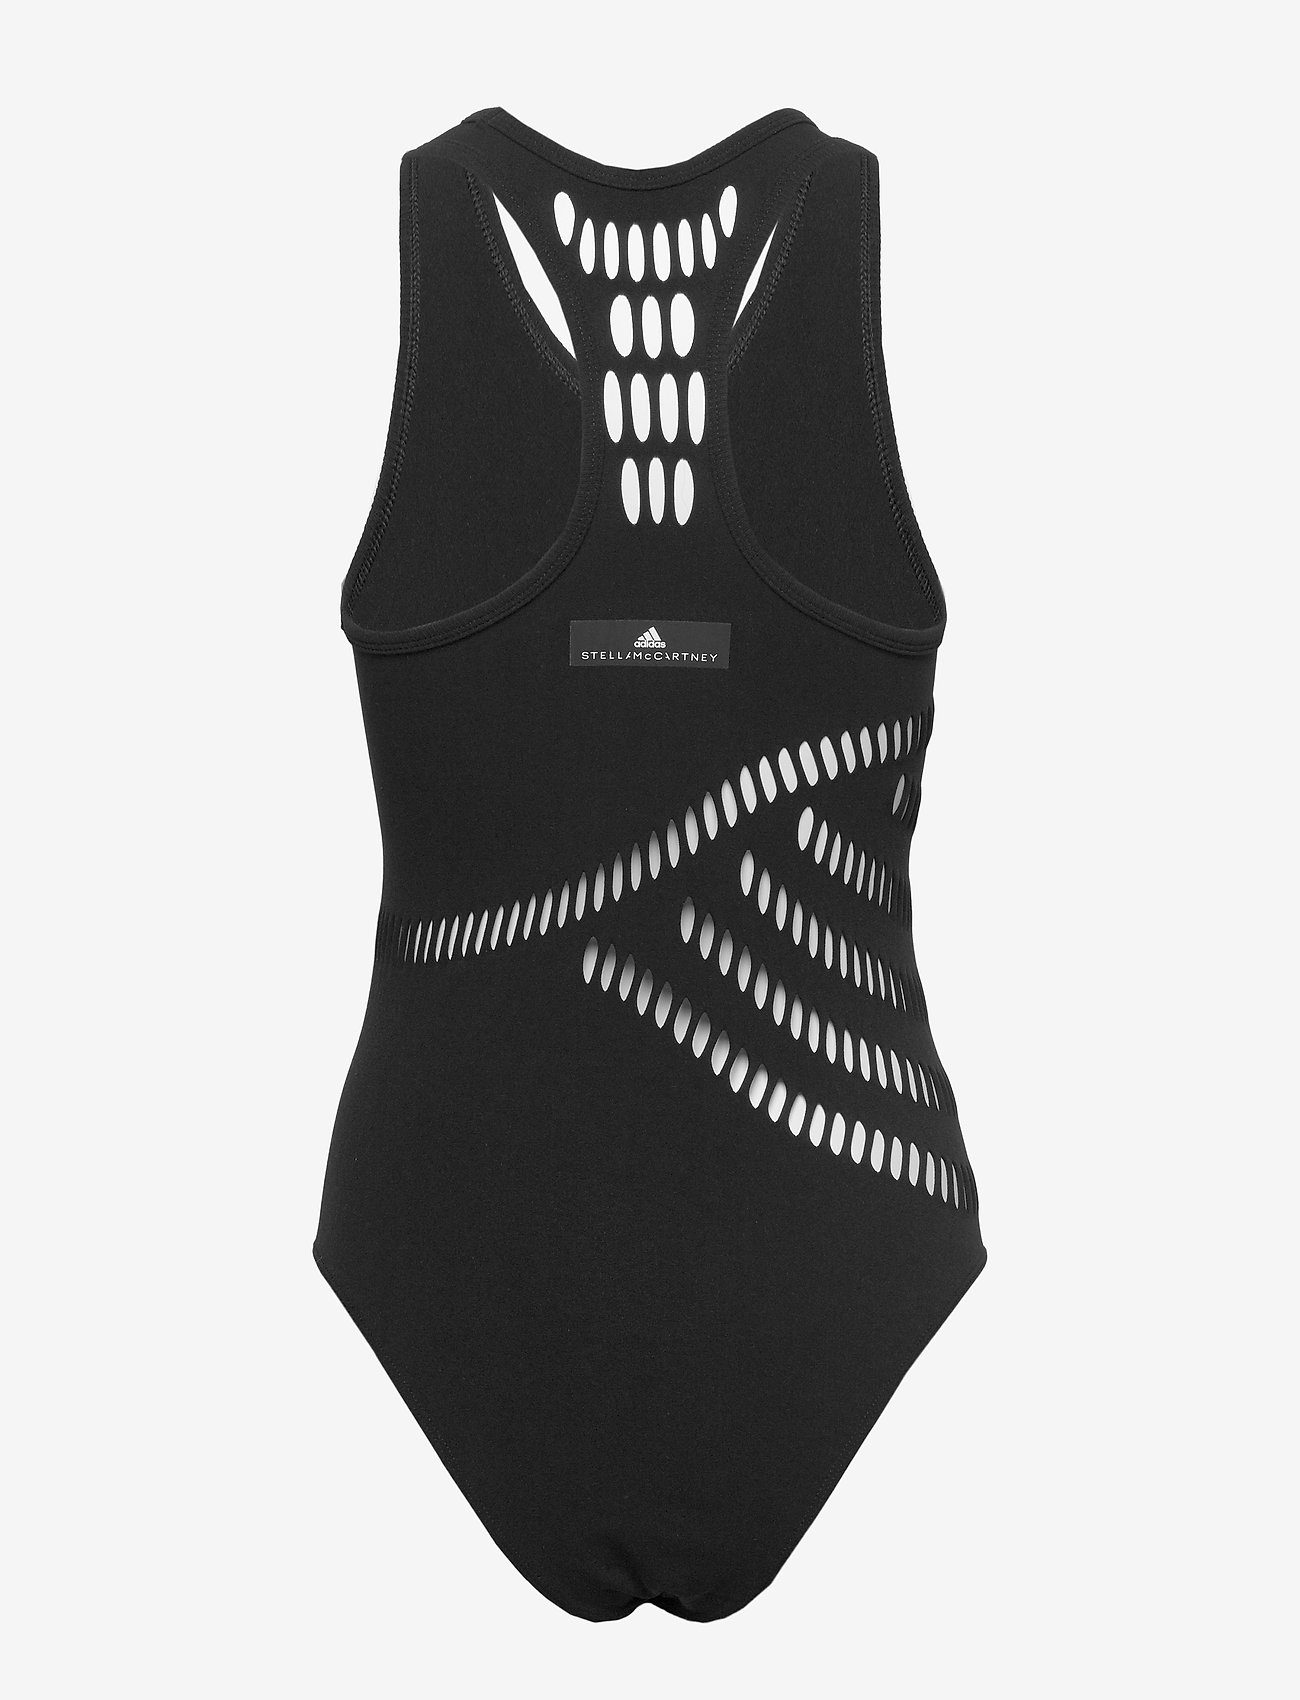 Warpknit Body (Black) (84.47 €) - adidas by Stella McCartney - | Boozt.com